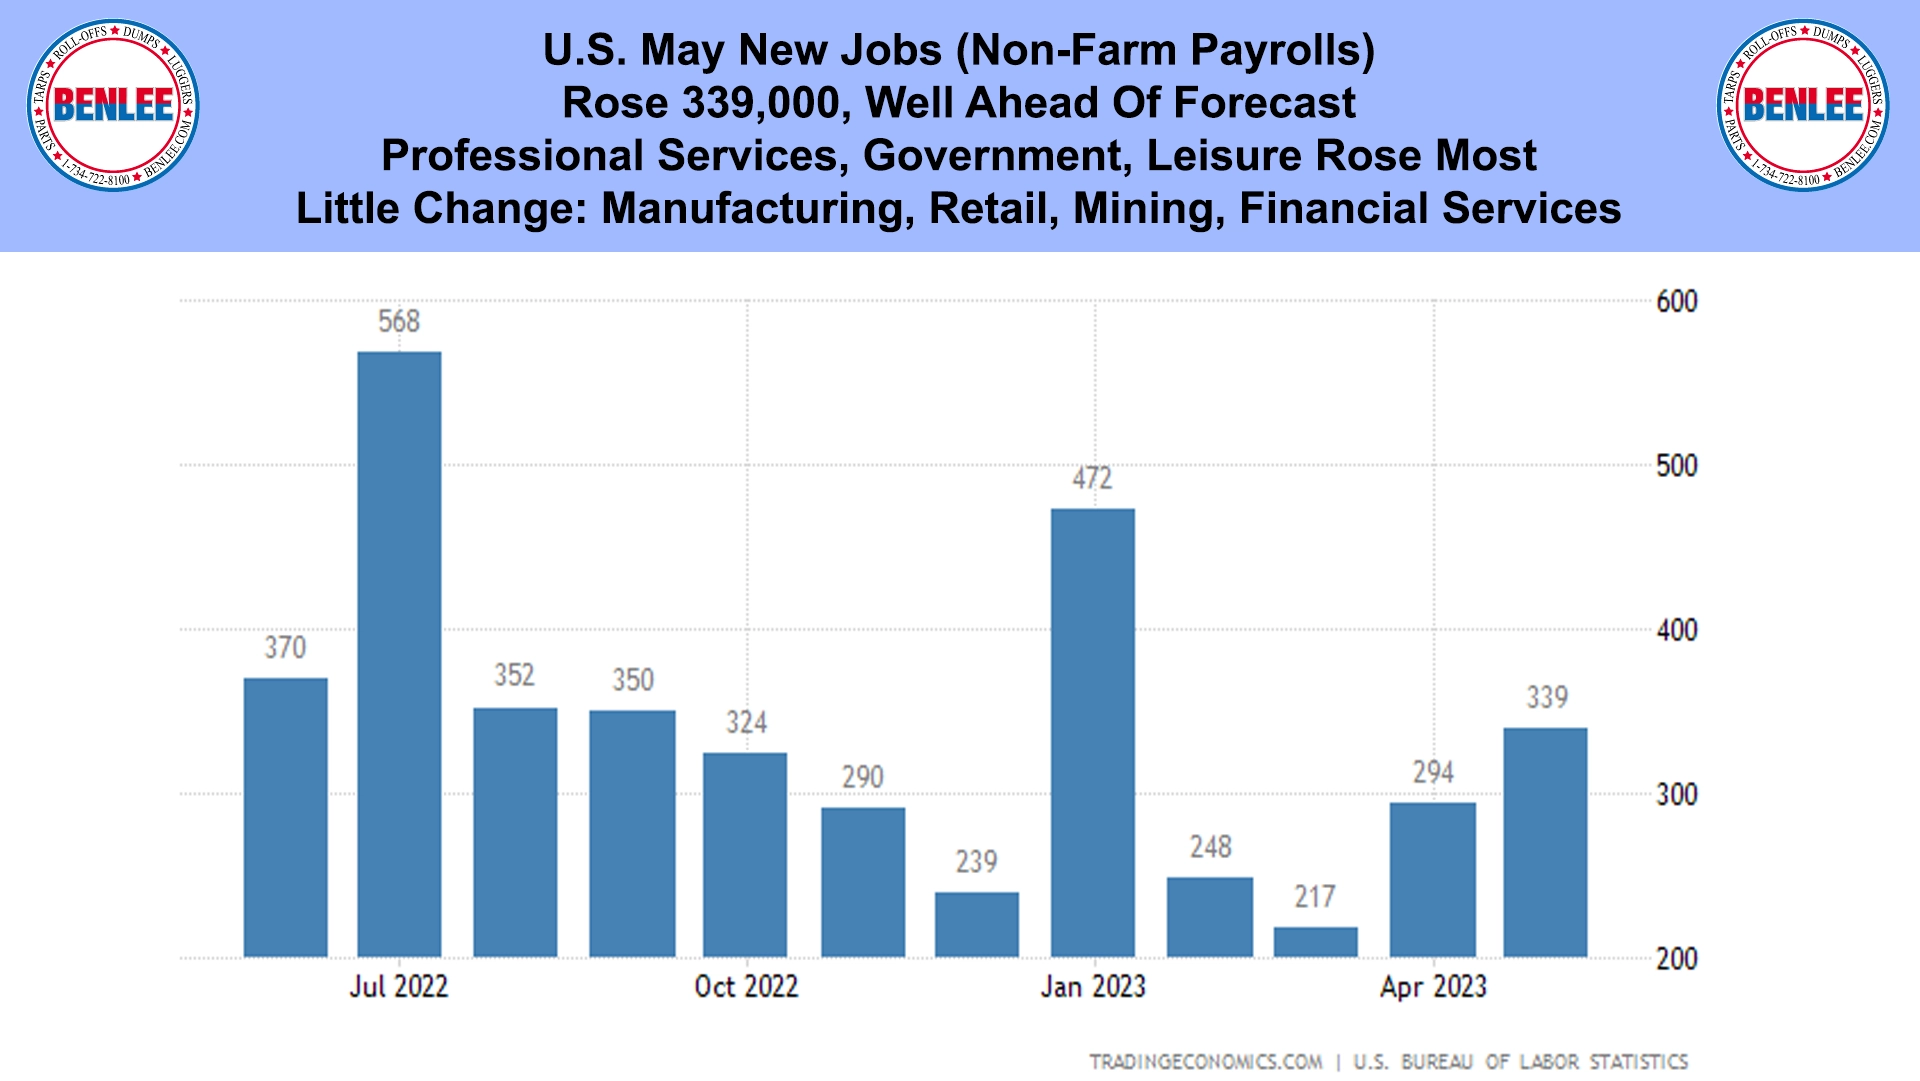 U.S. May New Jobs (Non-Farm Payrolls)